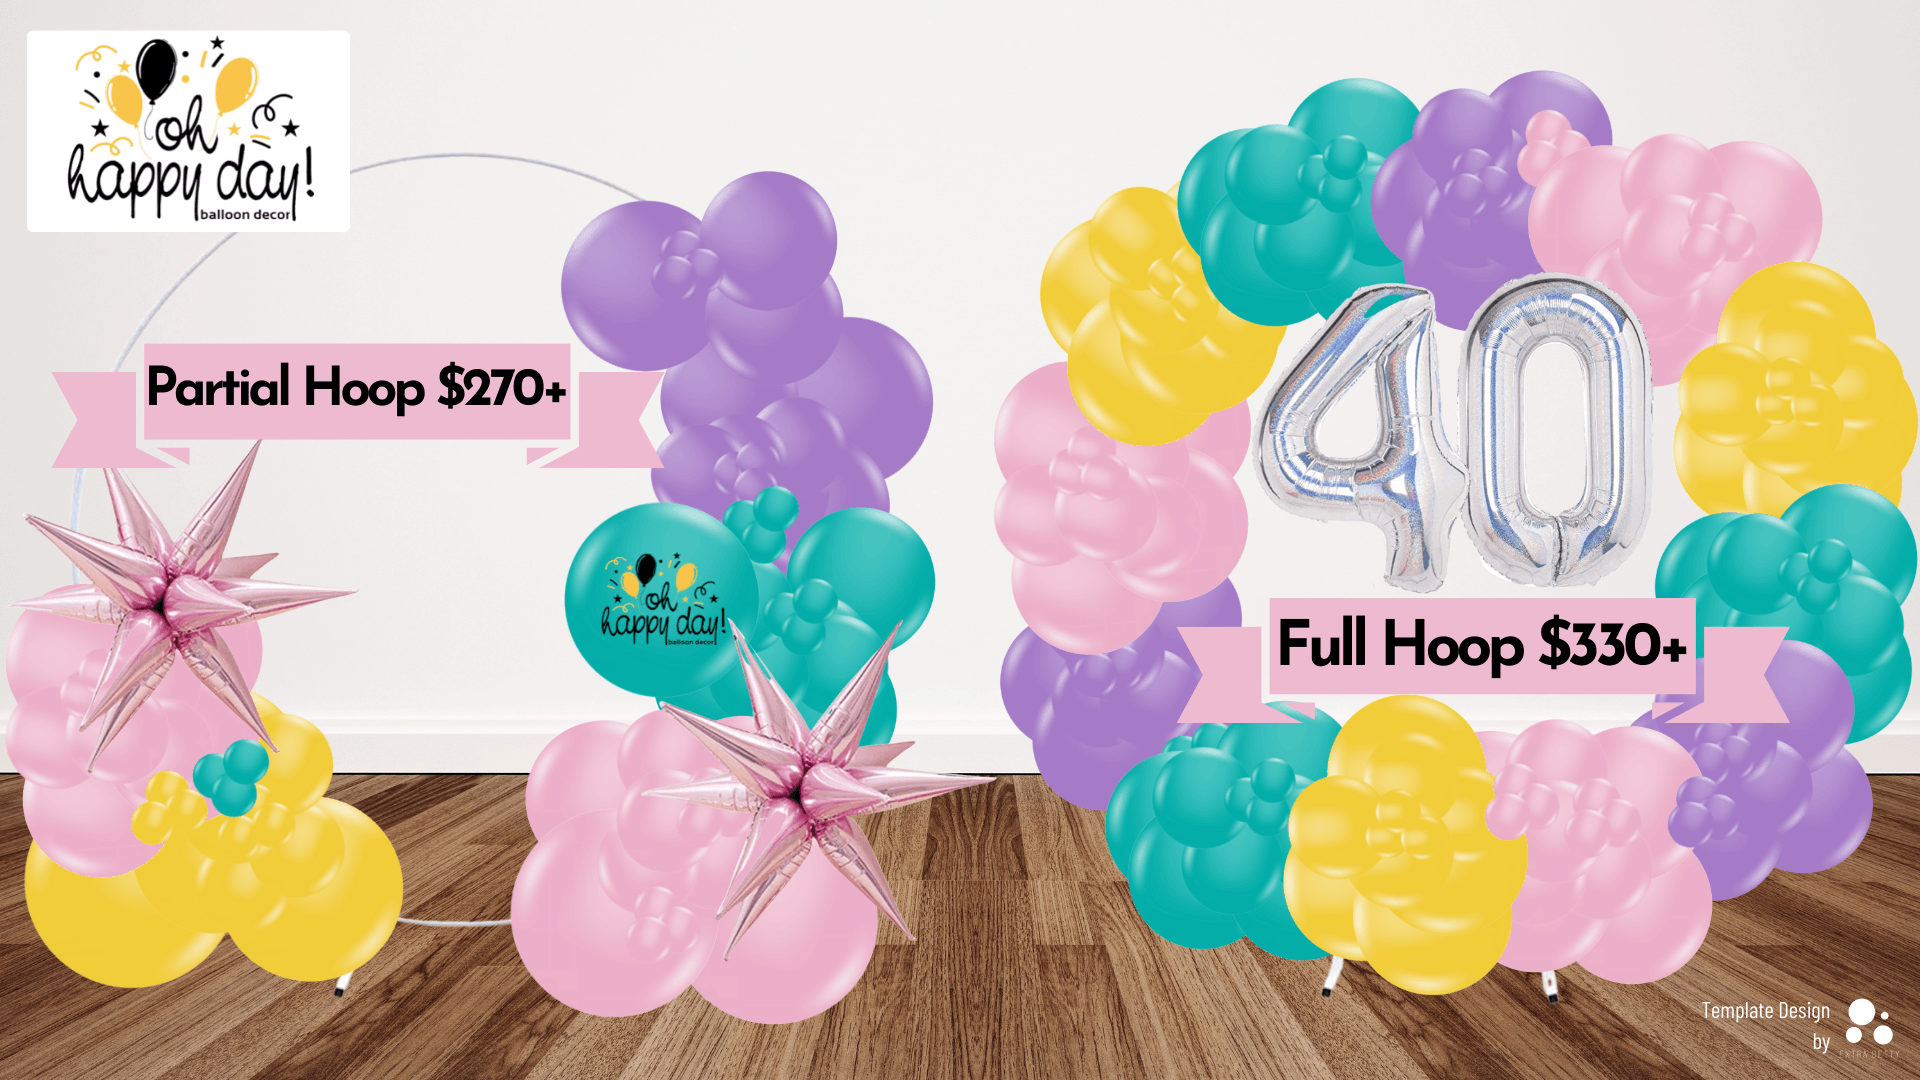 Balloon garland pricing guide Partial Hoop: $270+ | Full Hoop: $330+